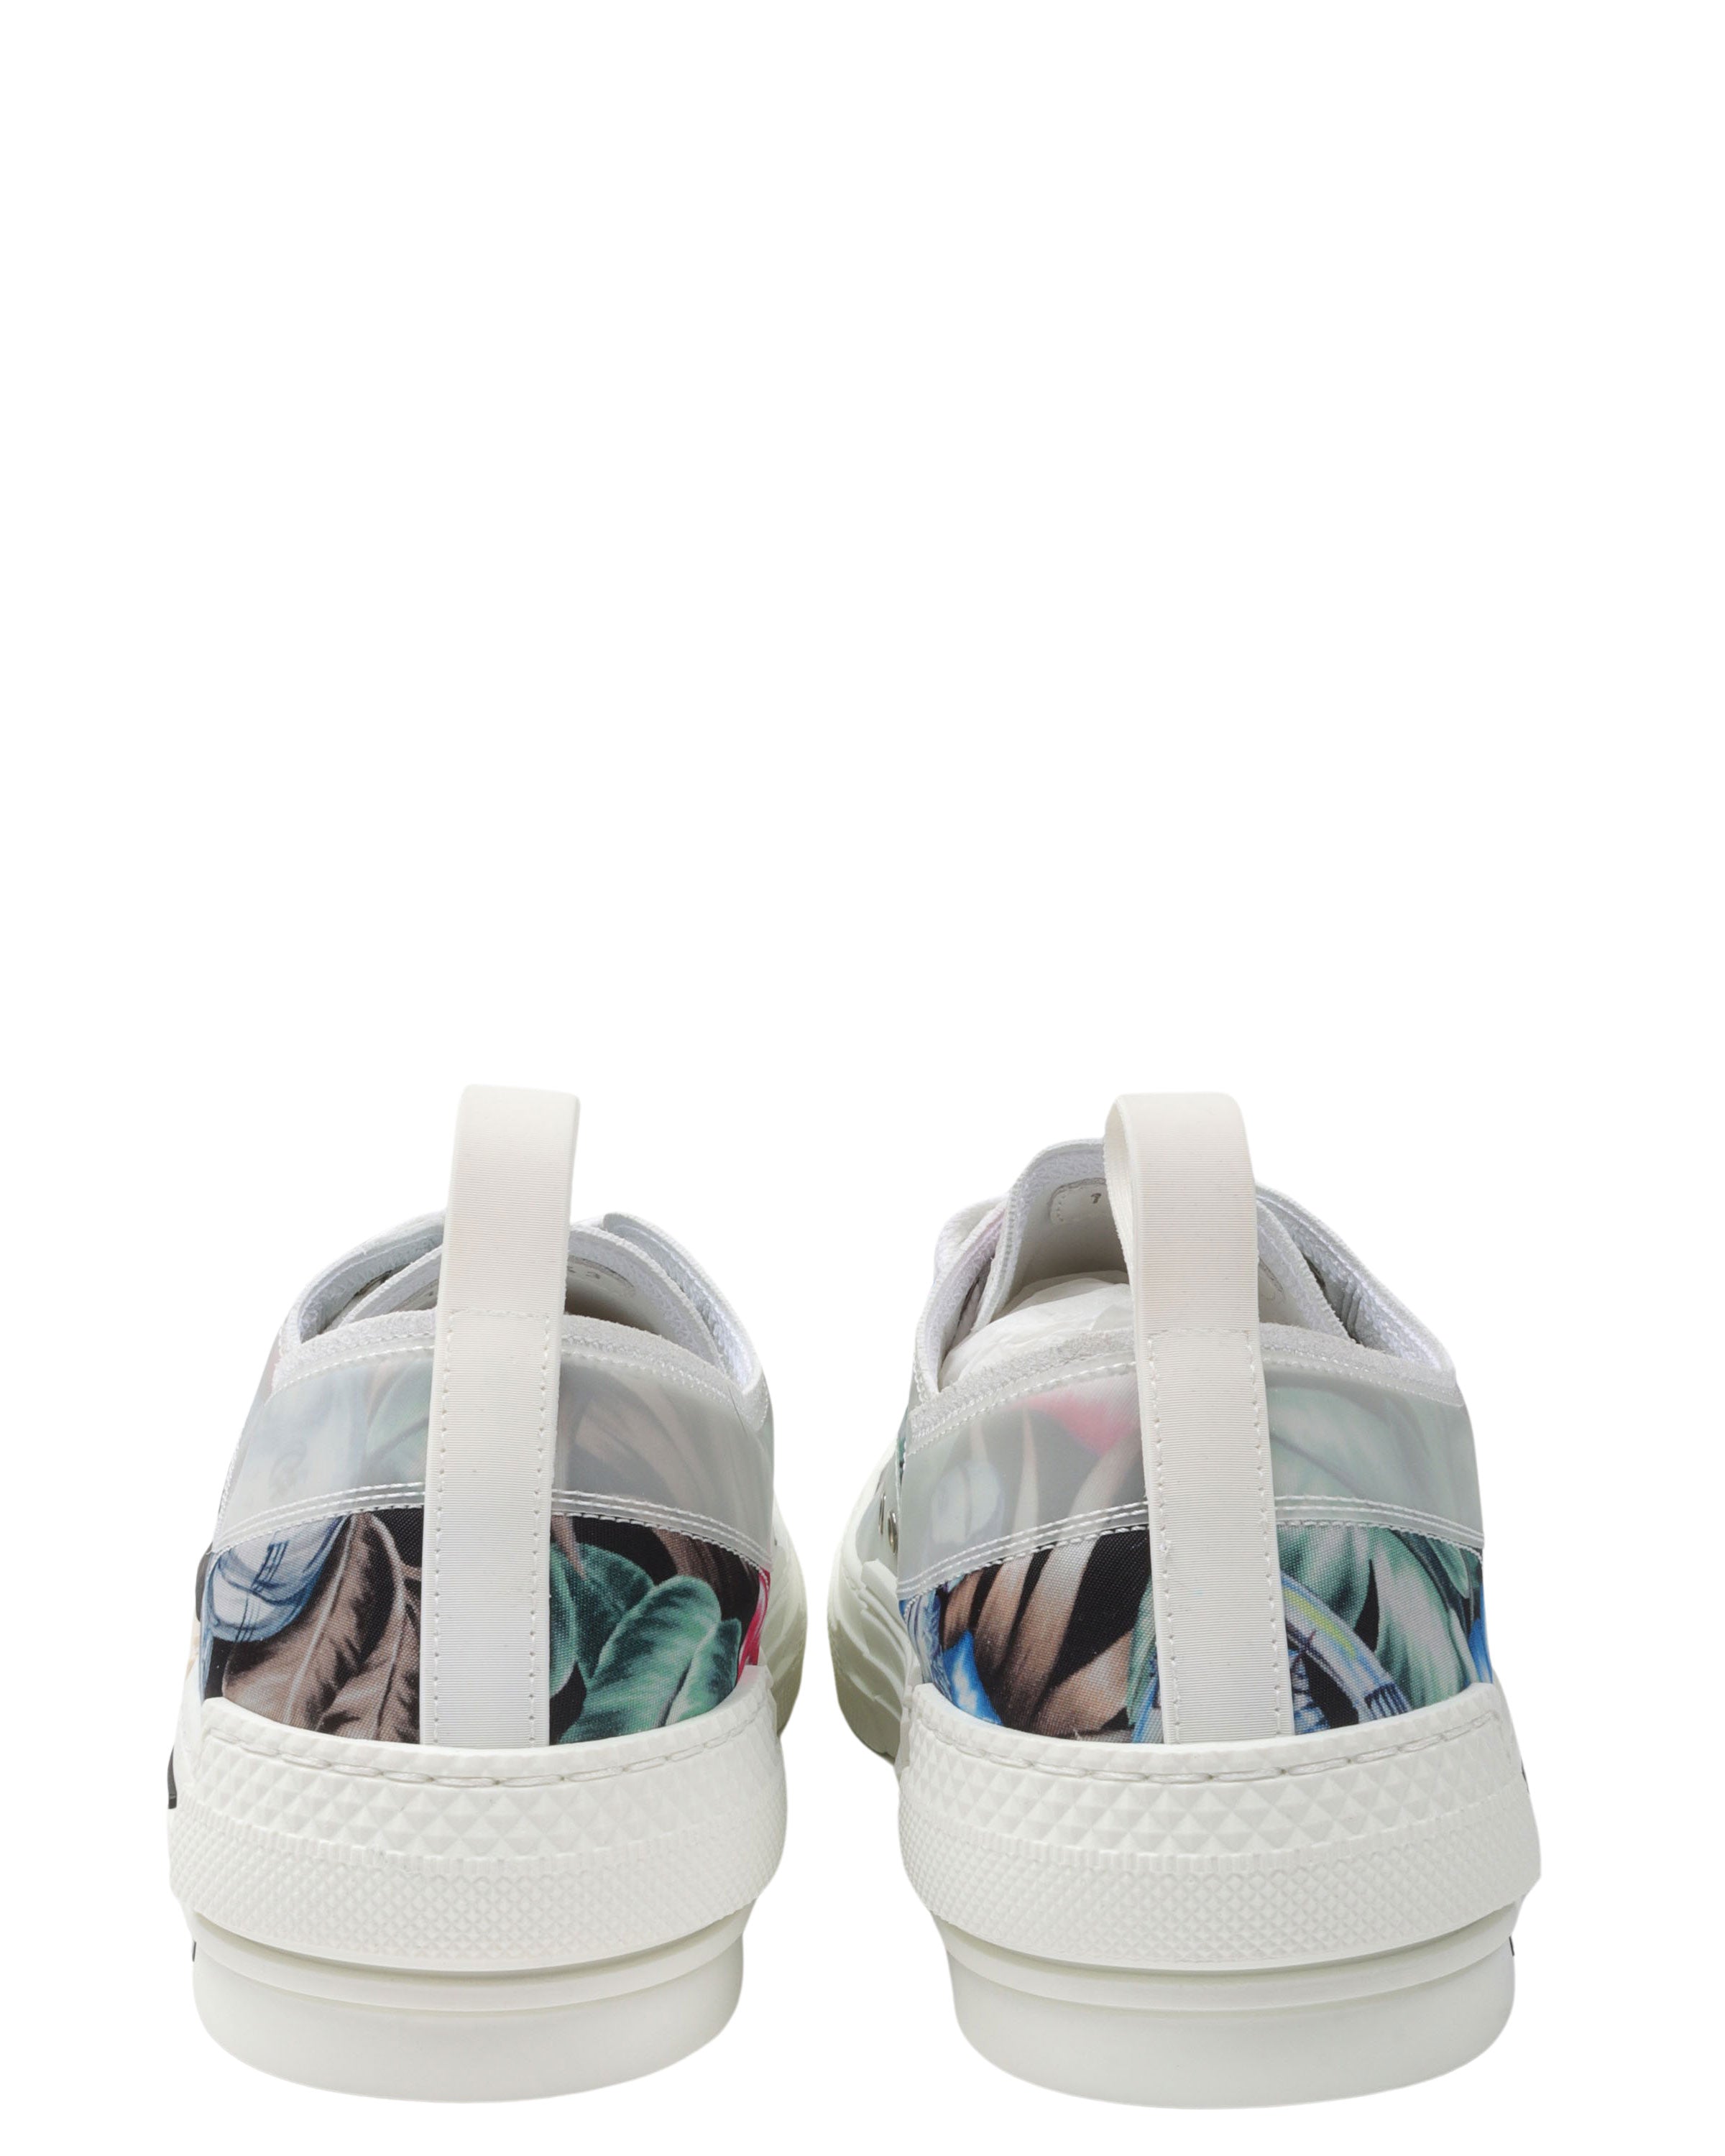 Sorayama B23 Low Sneakers